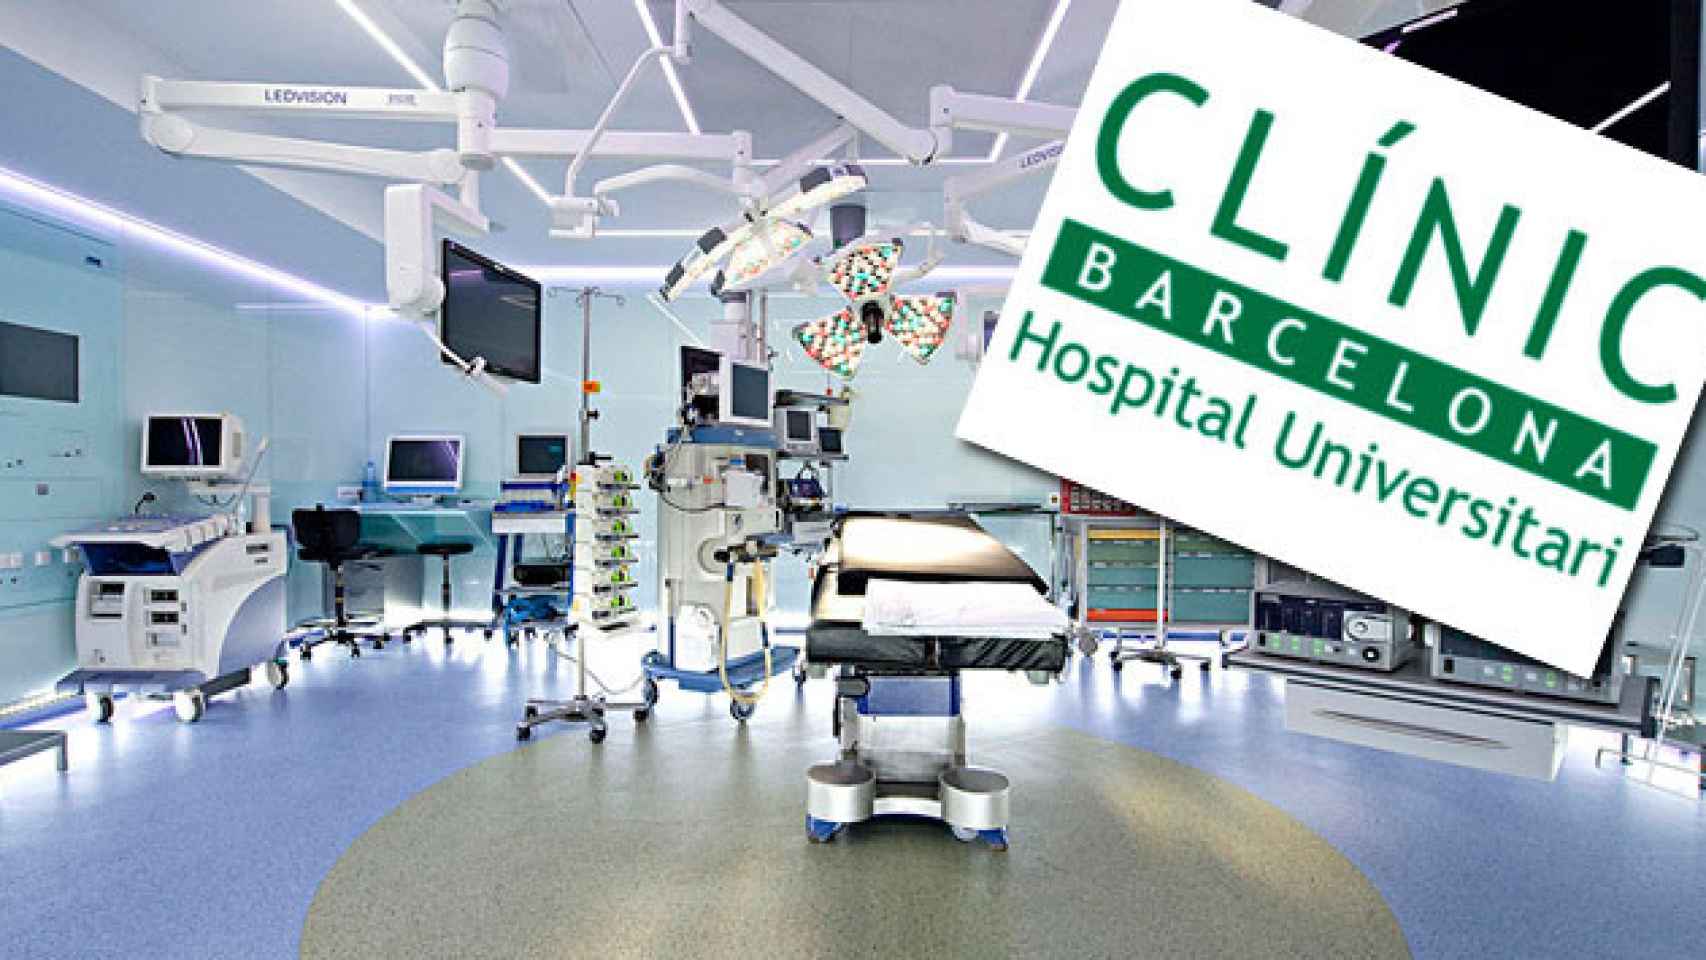 Un quirófano del Hospital Clínic Barcelona y el logo del grupo / CG